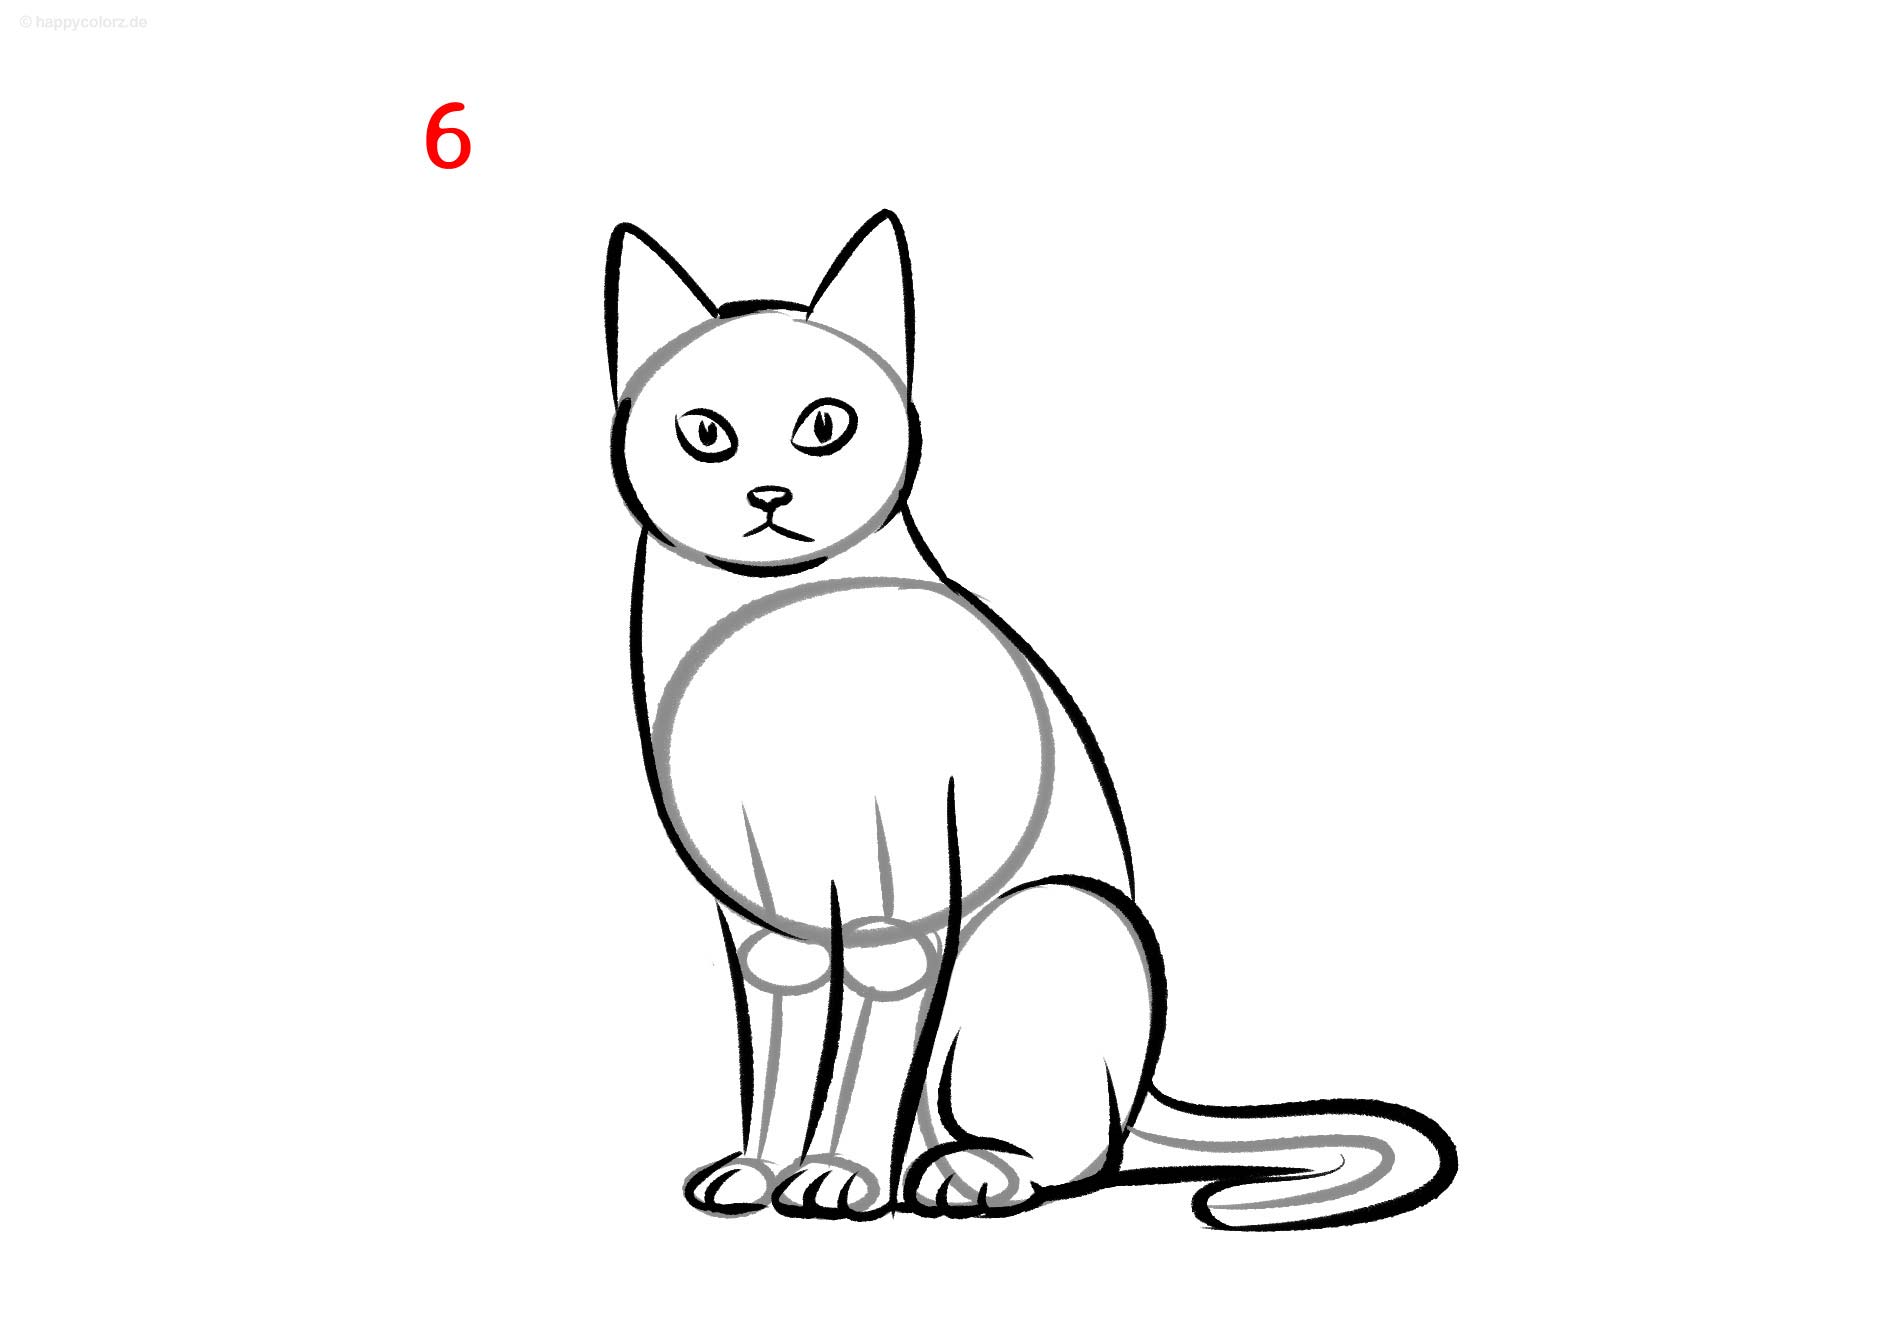 Katze zeichnen - Schritt für Schritt